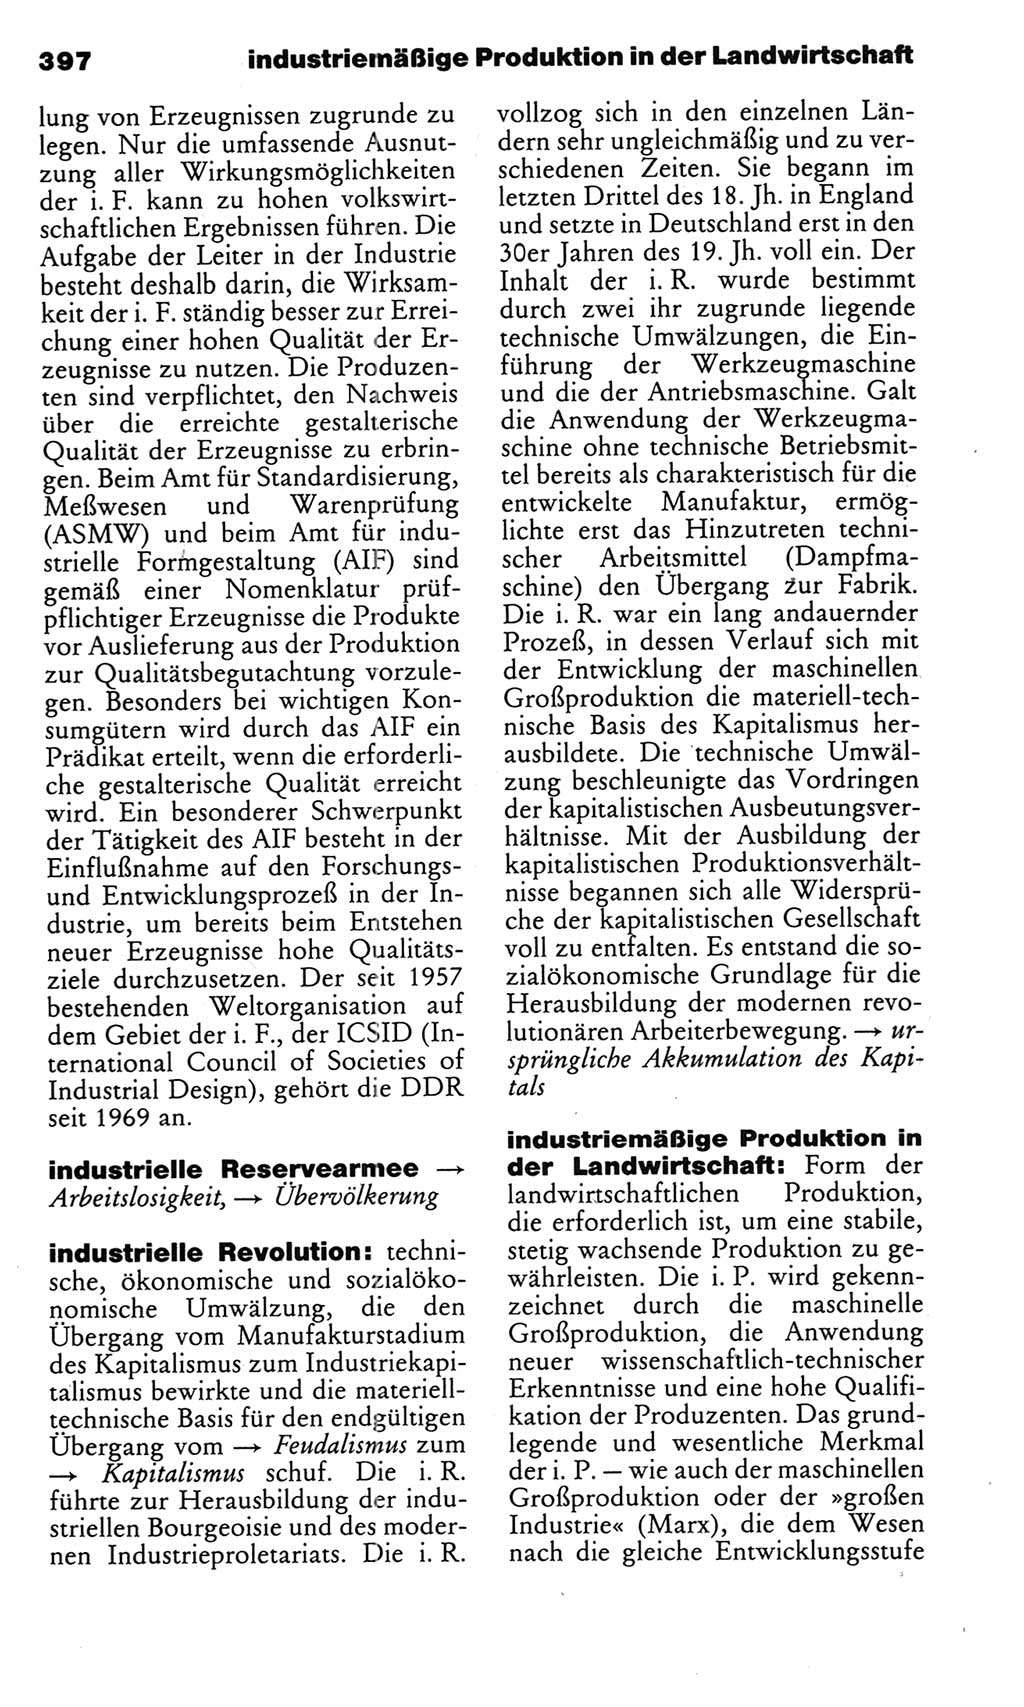 Kleines politisches Wörterbuch [Deutsche Demokratische Republik (DDR)] 1983, Seite 397 (Kl. pol. Wb. DDR 1983, S. 397)